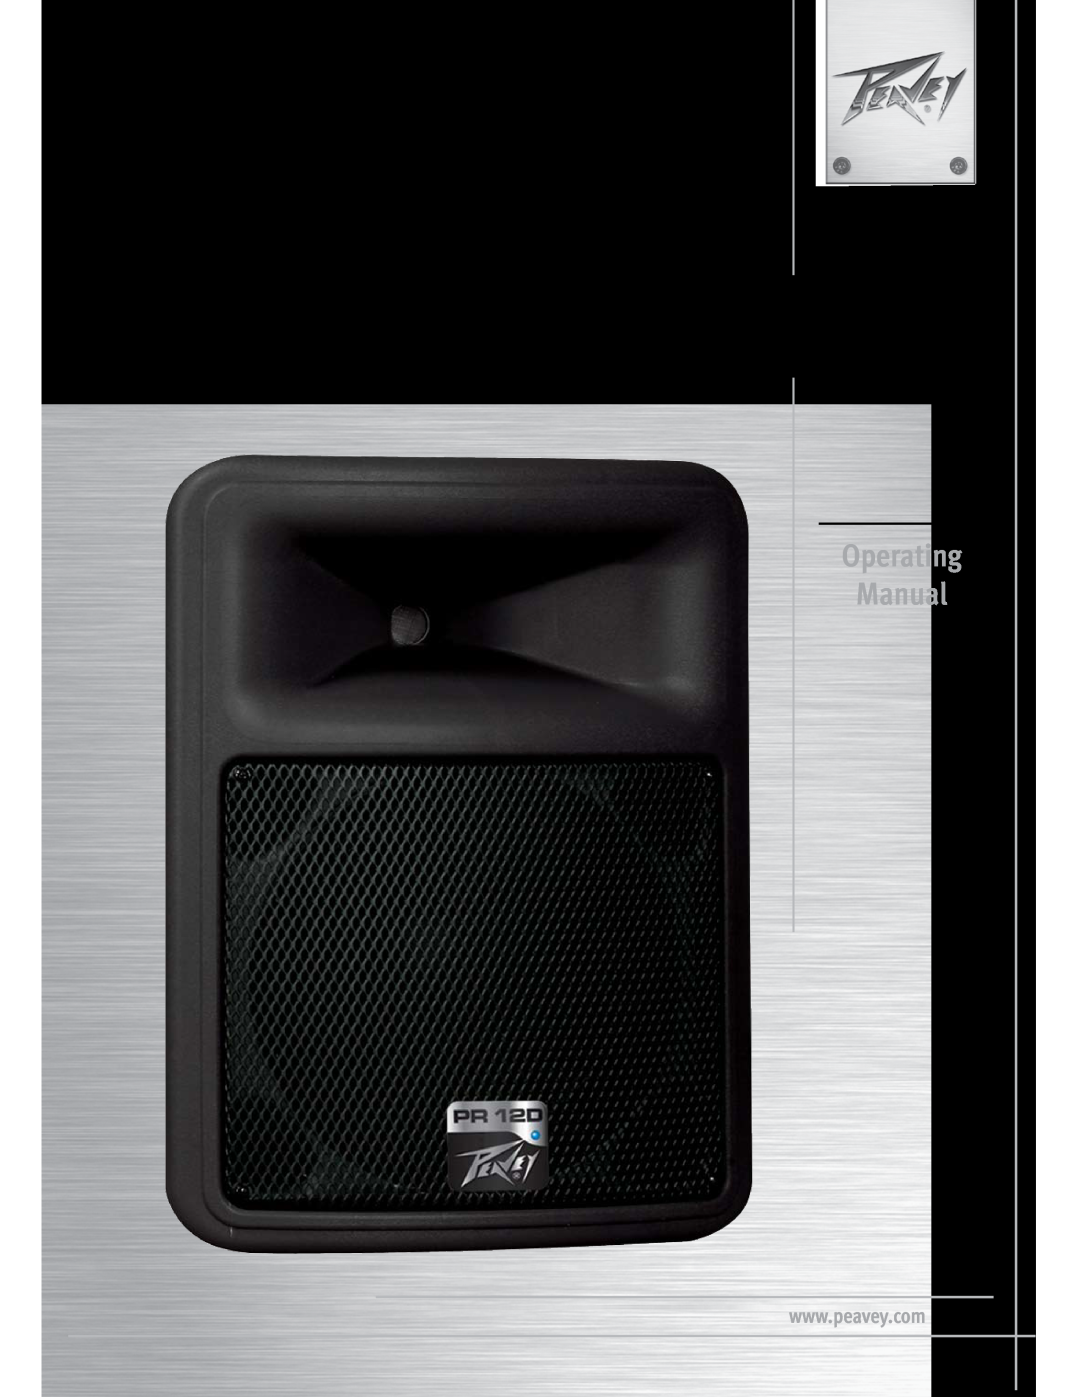 Peavey manual Impulse12 D, Operating Manual, Bi-amplifiedClass D powered speaker system 